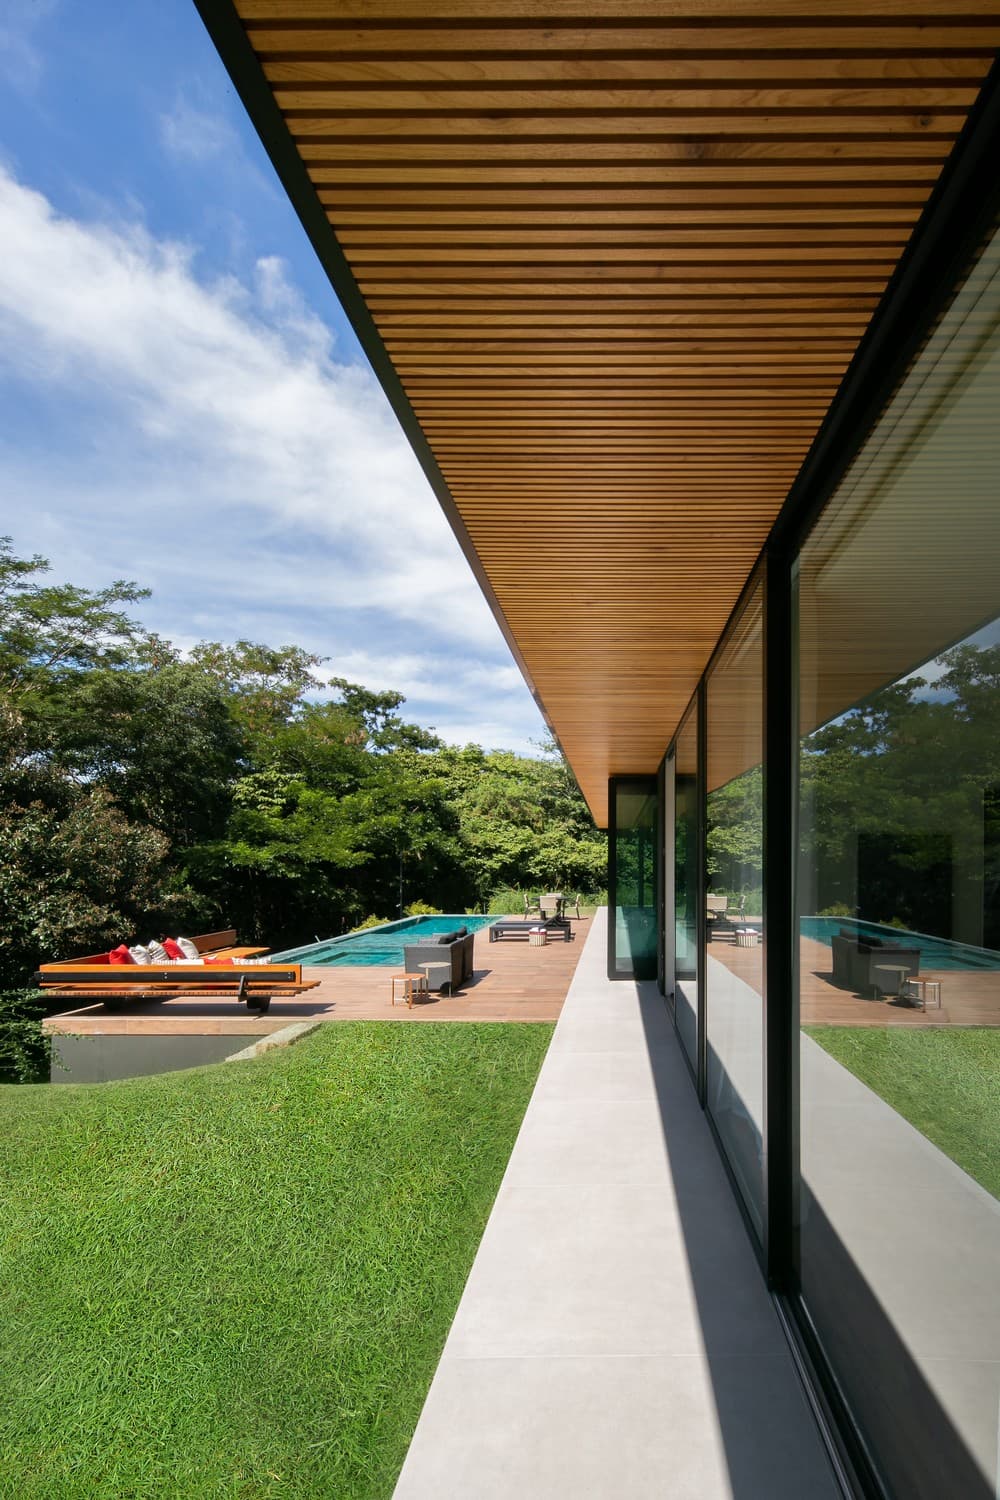 BM Residence, Brazil / Belluzzo Martinhao Arquitetos